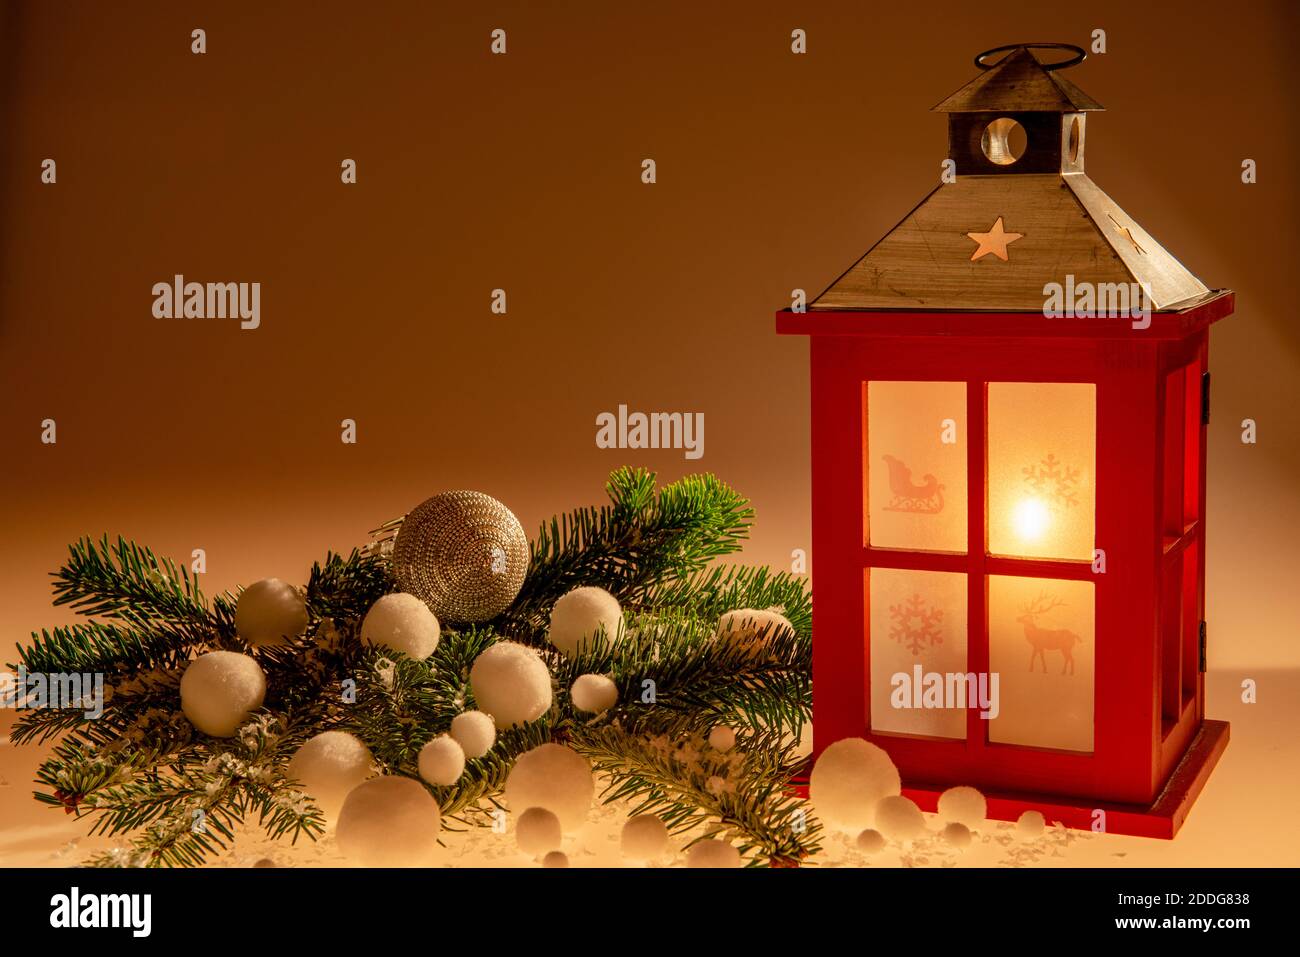 Eine Weihnachtsdekoration mit Kerze erzeugt eine ruhige weihnachtliche Stimmung Stockfoto